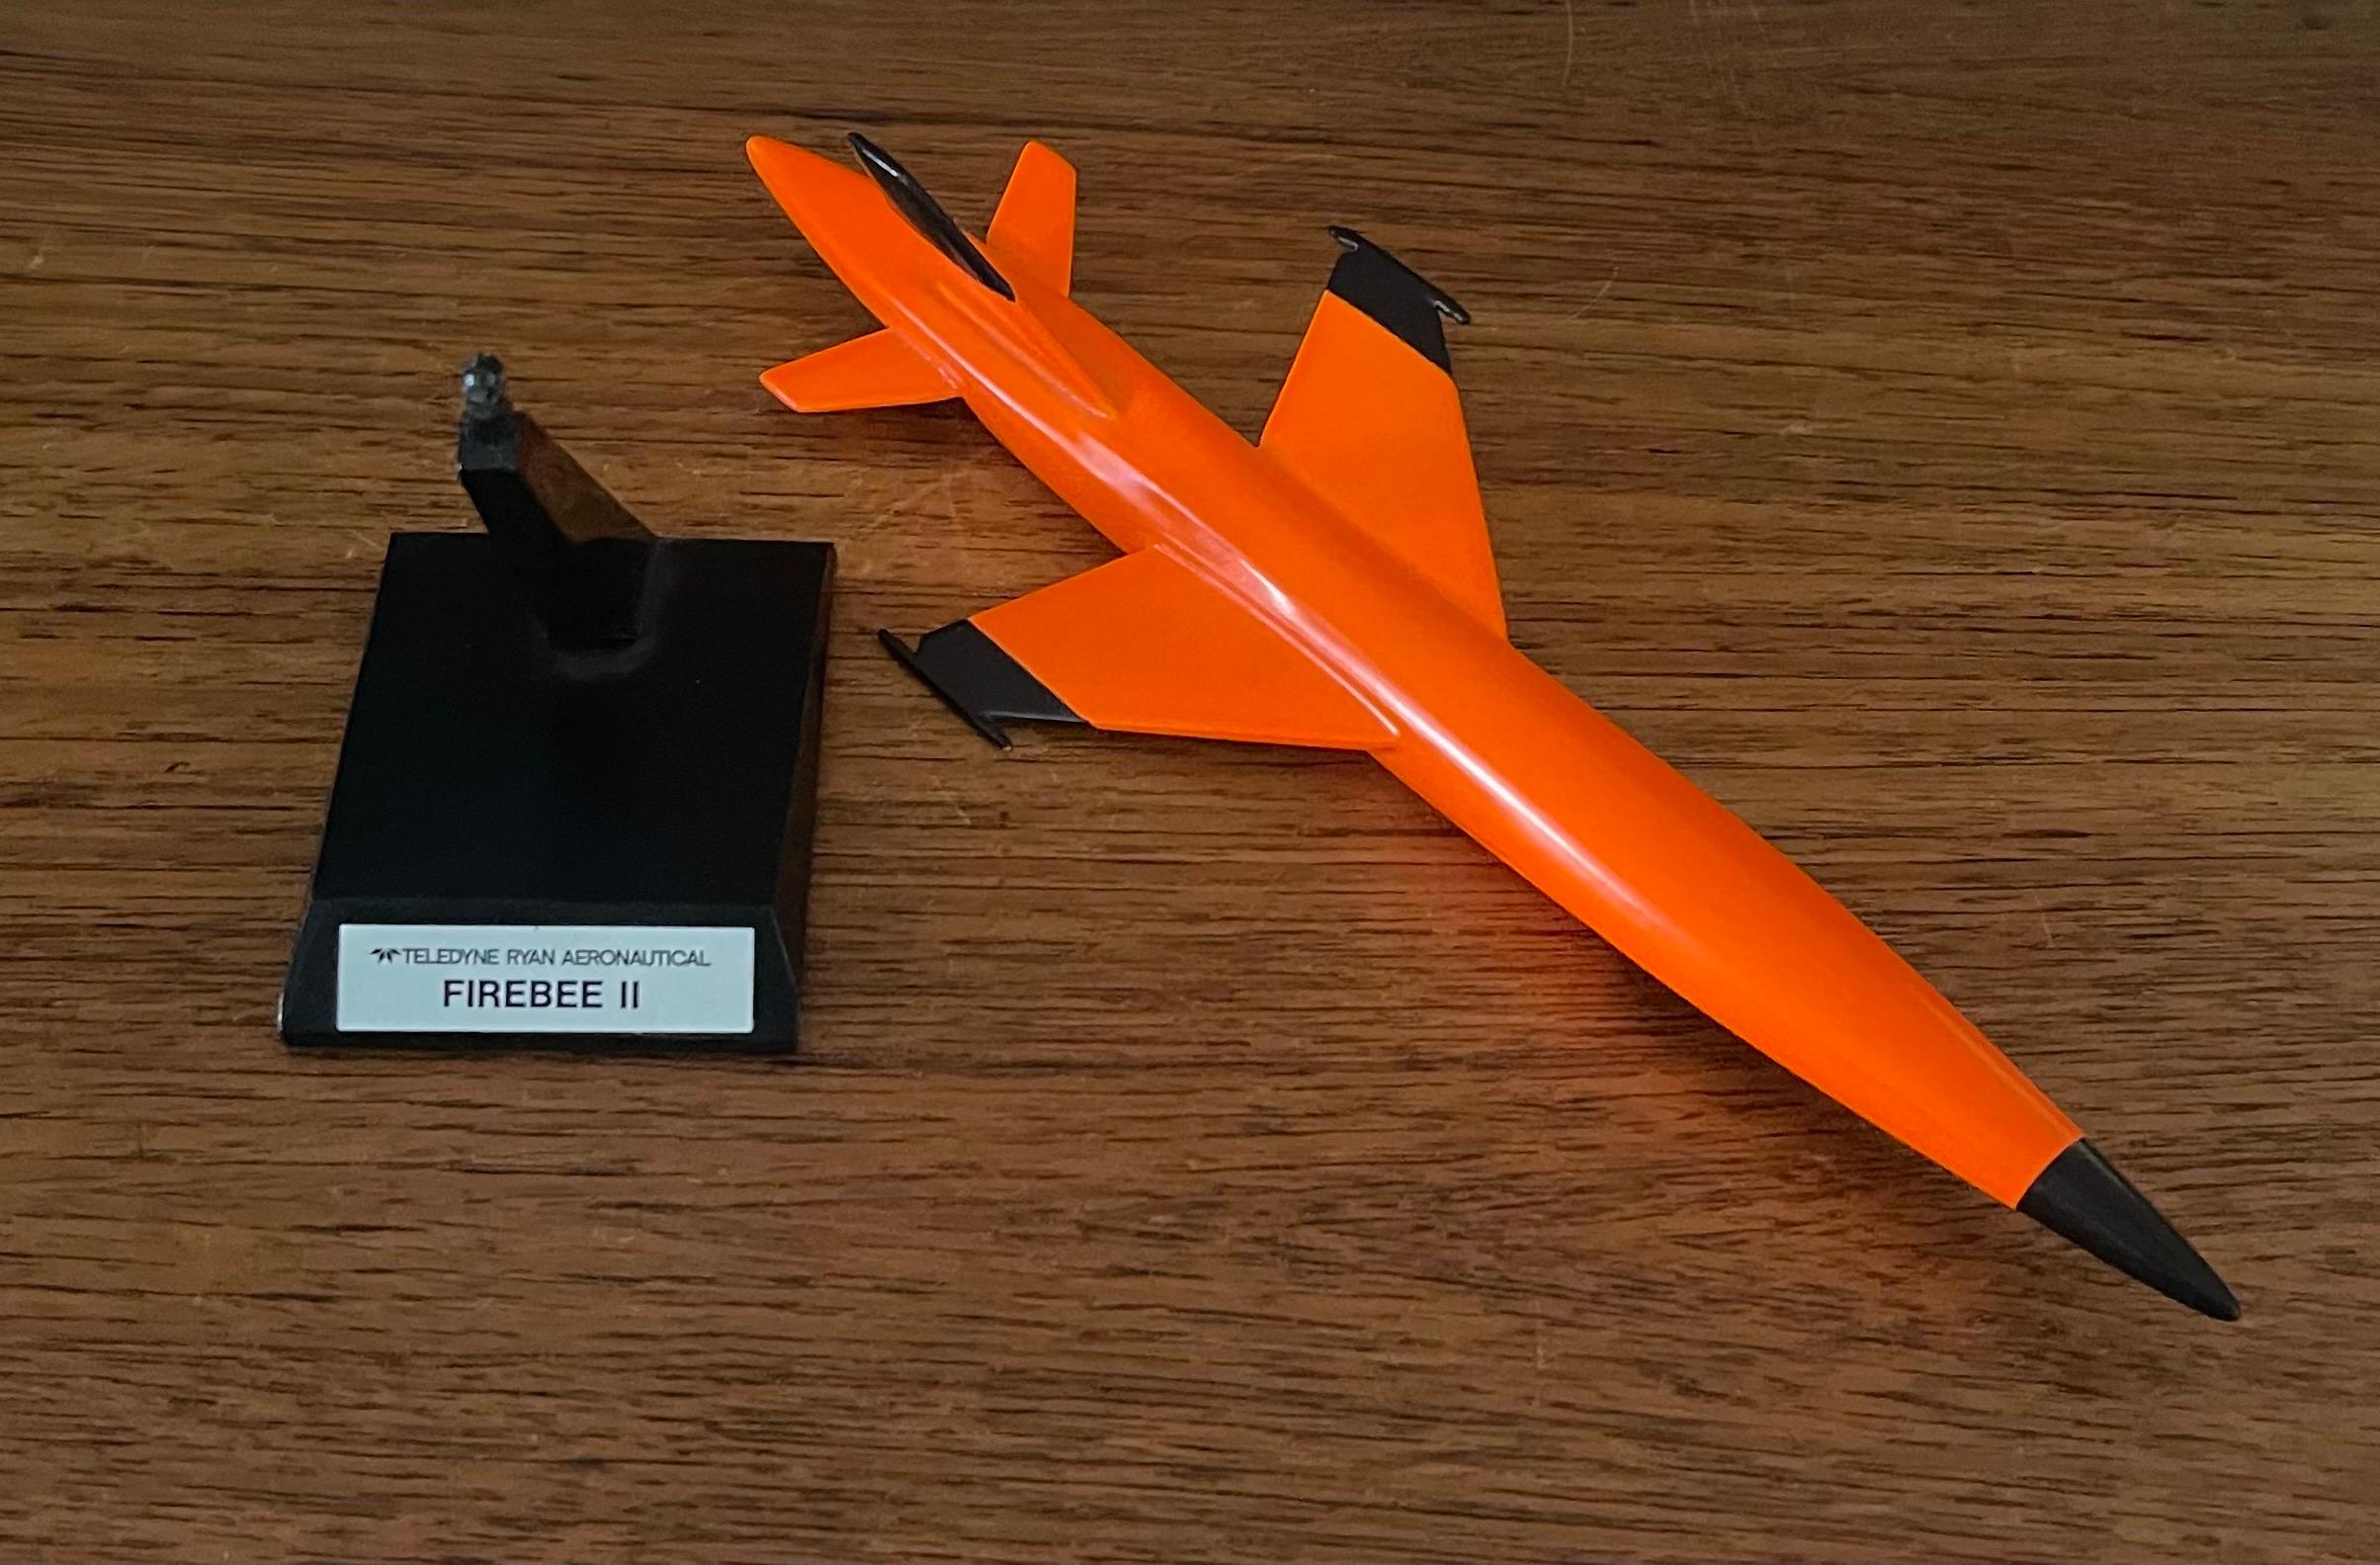 Teledyne Ryan Firebee II Drone Contractor's Desk Model For Sale 6